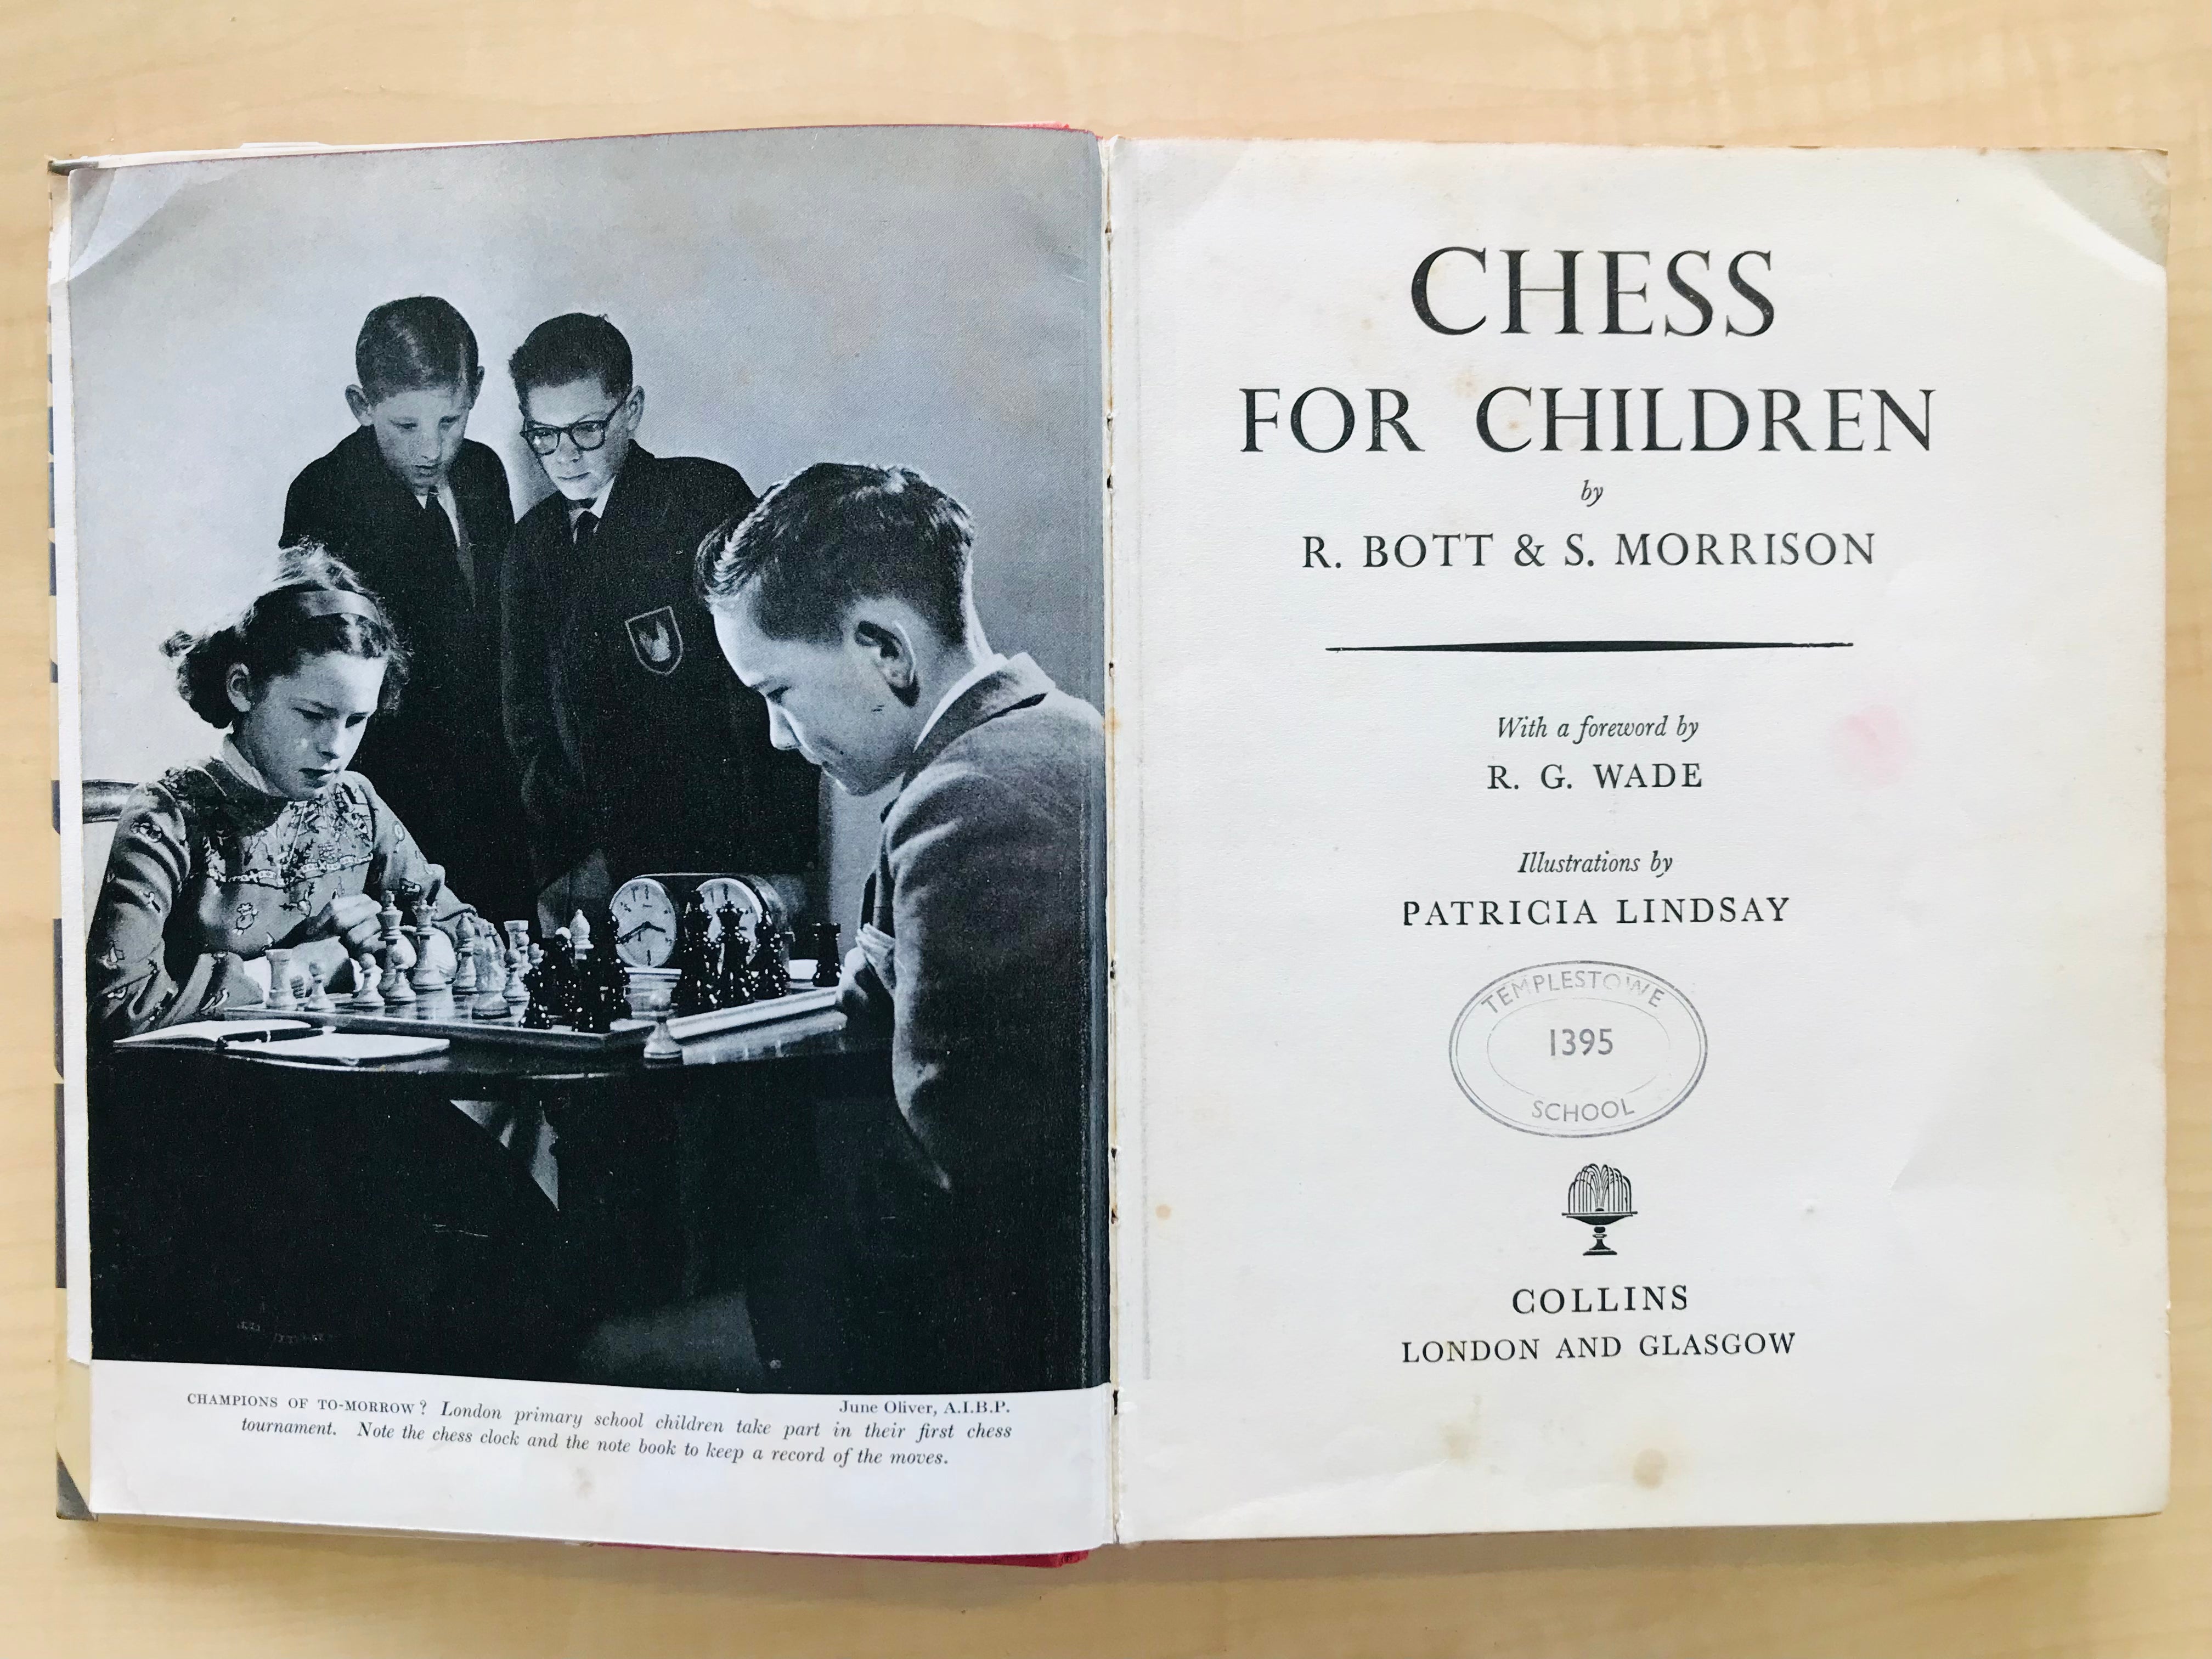 Chess for Children by Raymond Bott and Stanley Morrison